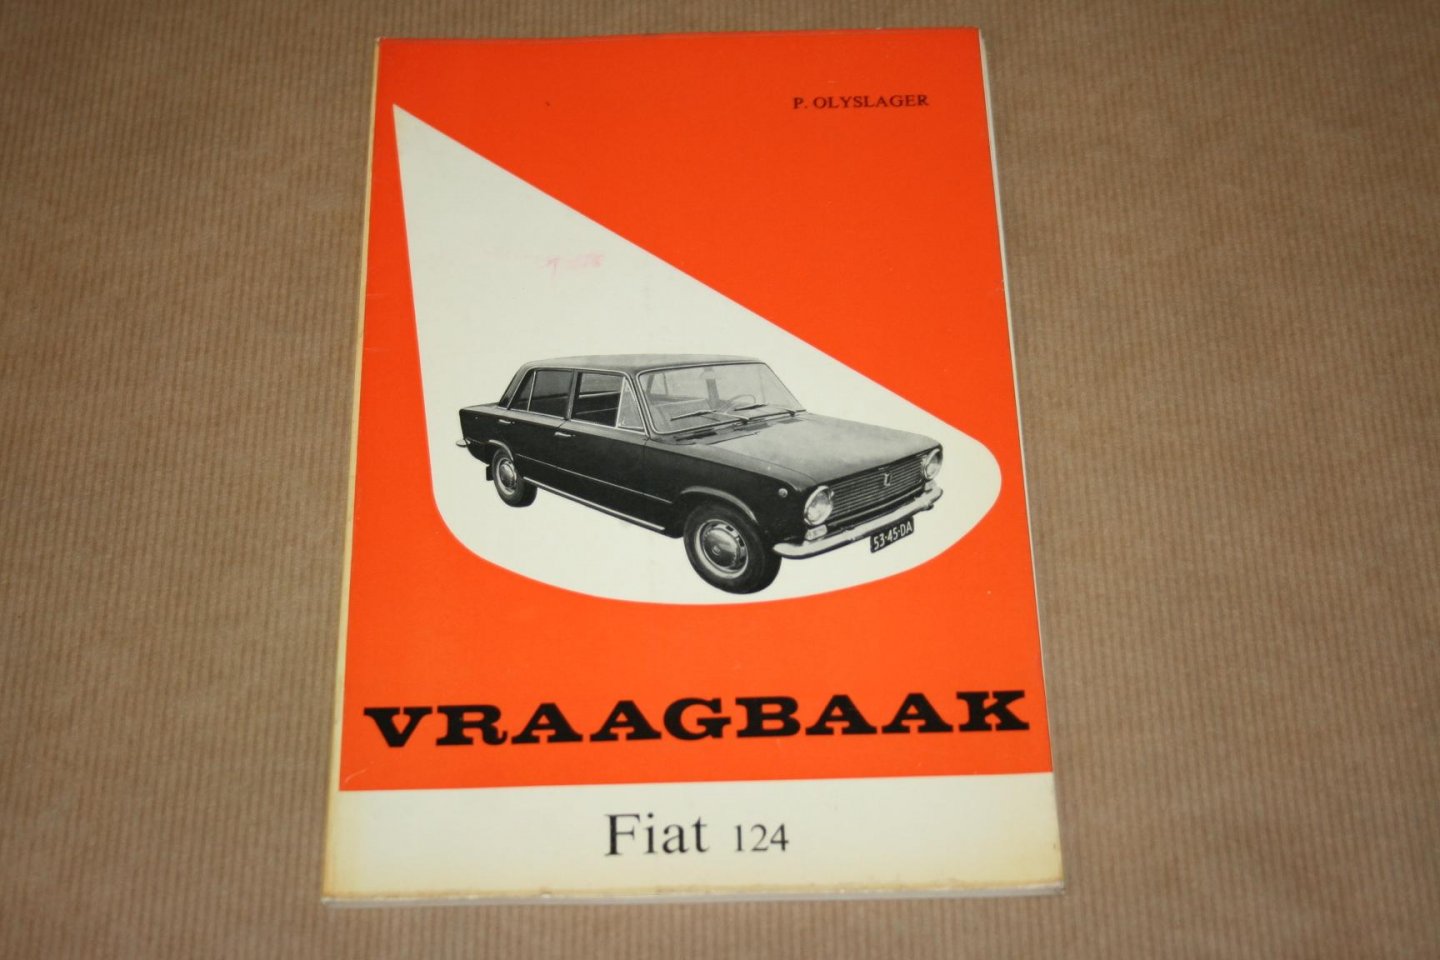 Piet Olyslager - Vraagbaak Fiat 124  Een complete handleiding voor het type: 124, sedan en stationcar 1966-1967